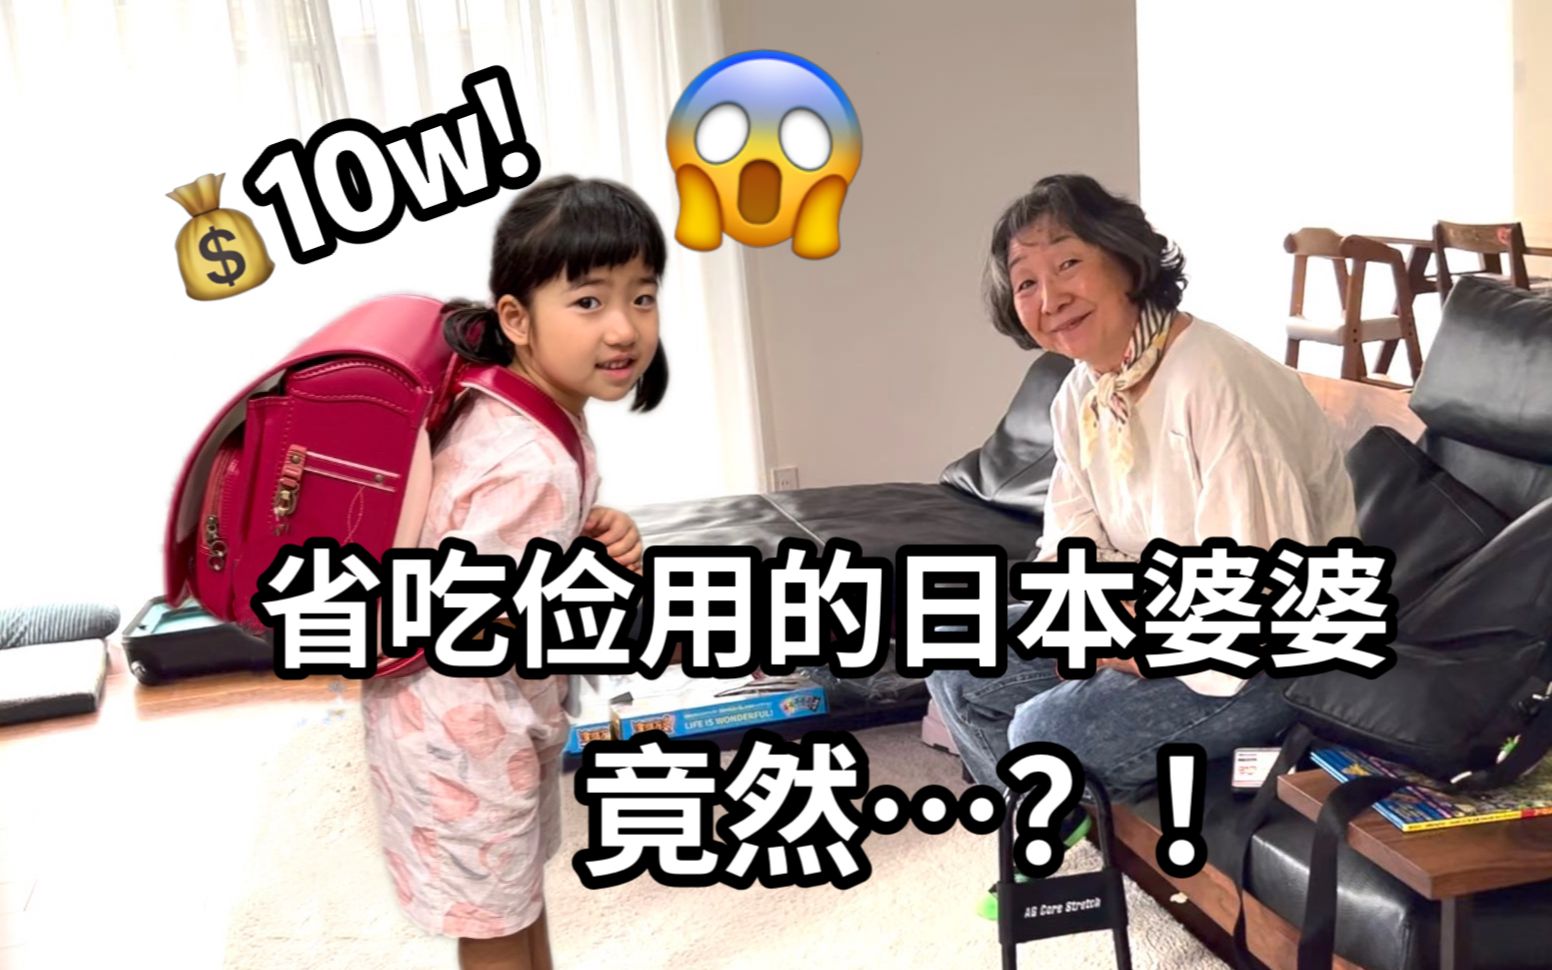 提前一年预订!10w块一个的日本小学生书包是认真的吗...【日本生活vlog】